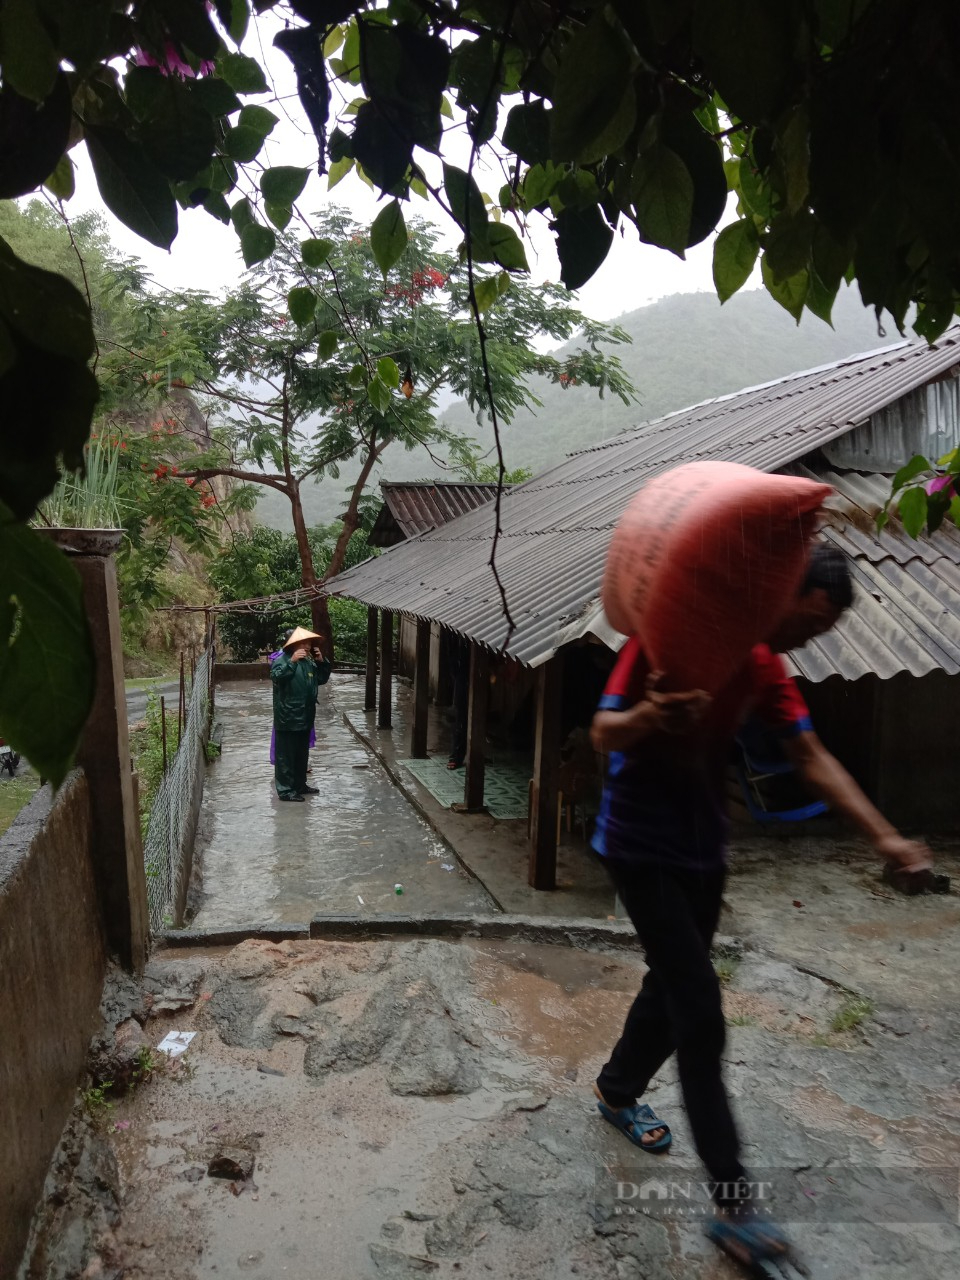 Thanh Hoá: Huyện Mường Lát sơ tán người dân vì mưa lớn gây sạt lở đất ở nhiều nơi - Ảnh 5.